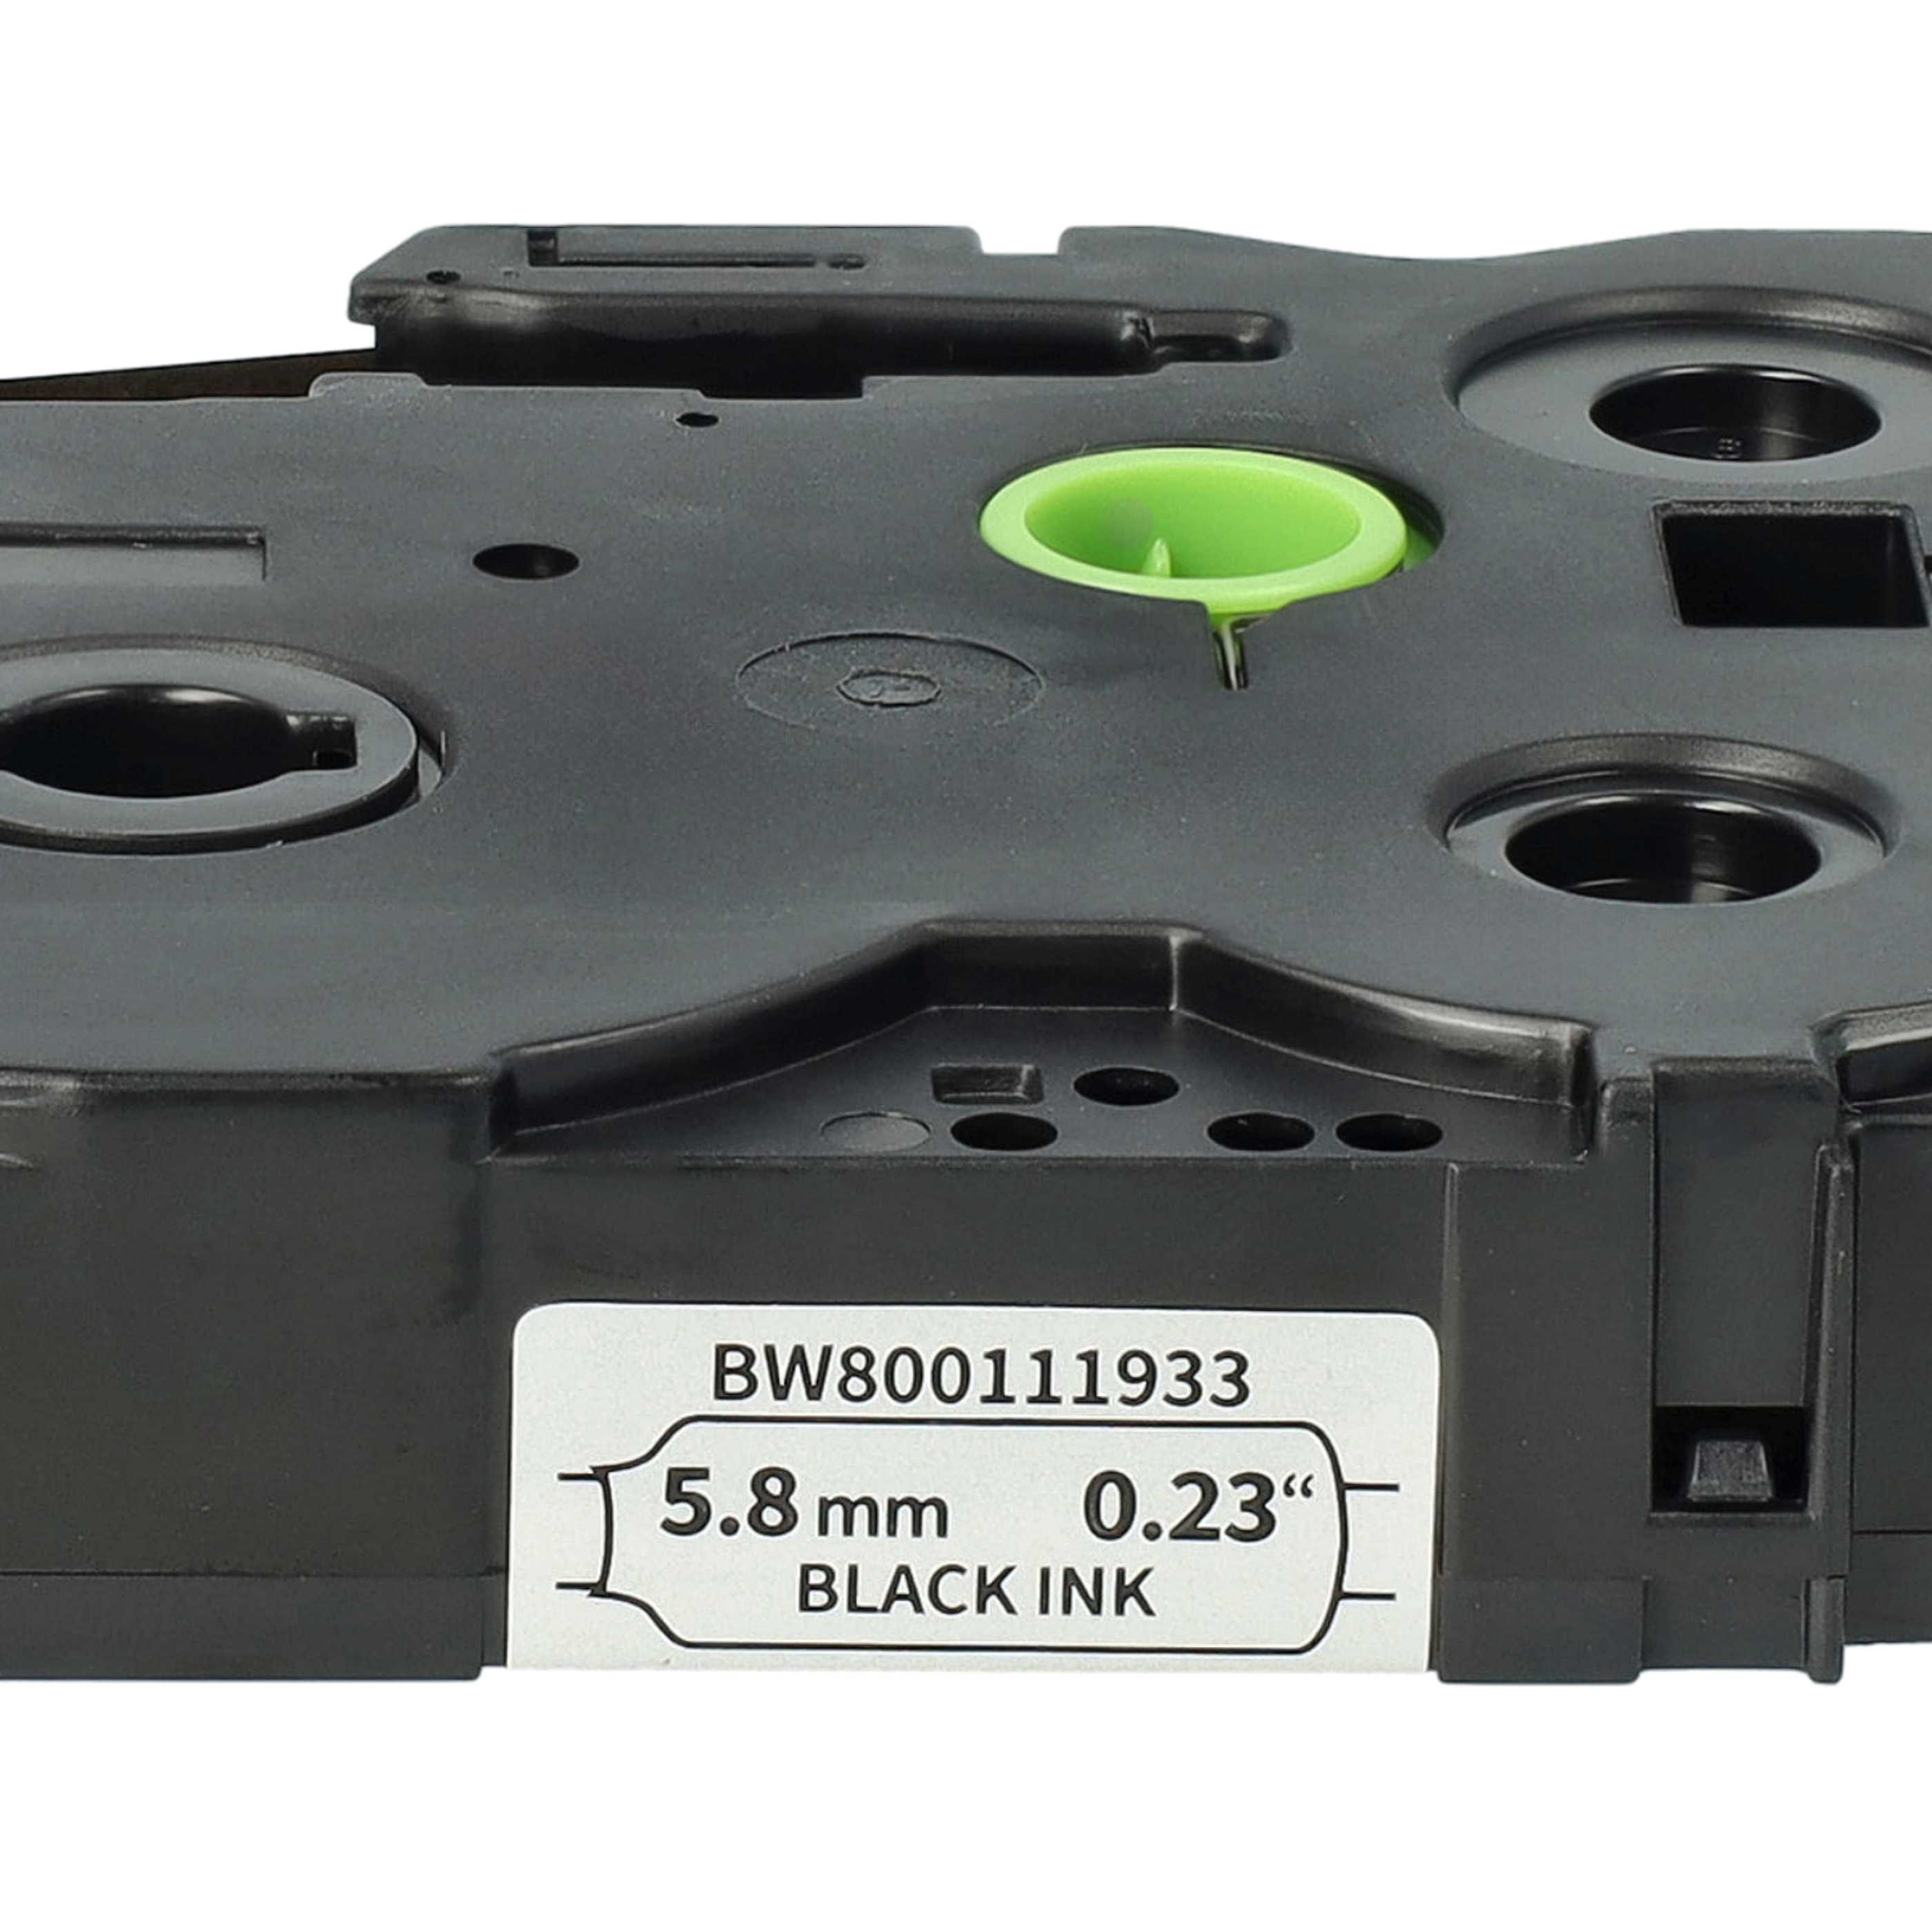 Cassette à ruban remplace Brother HSE-211 - 5,8mm lettrage Noir ruban Blanc, thermorétractable, 5,8 mm